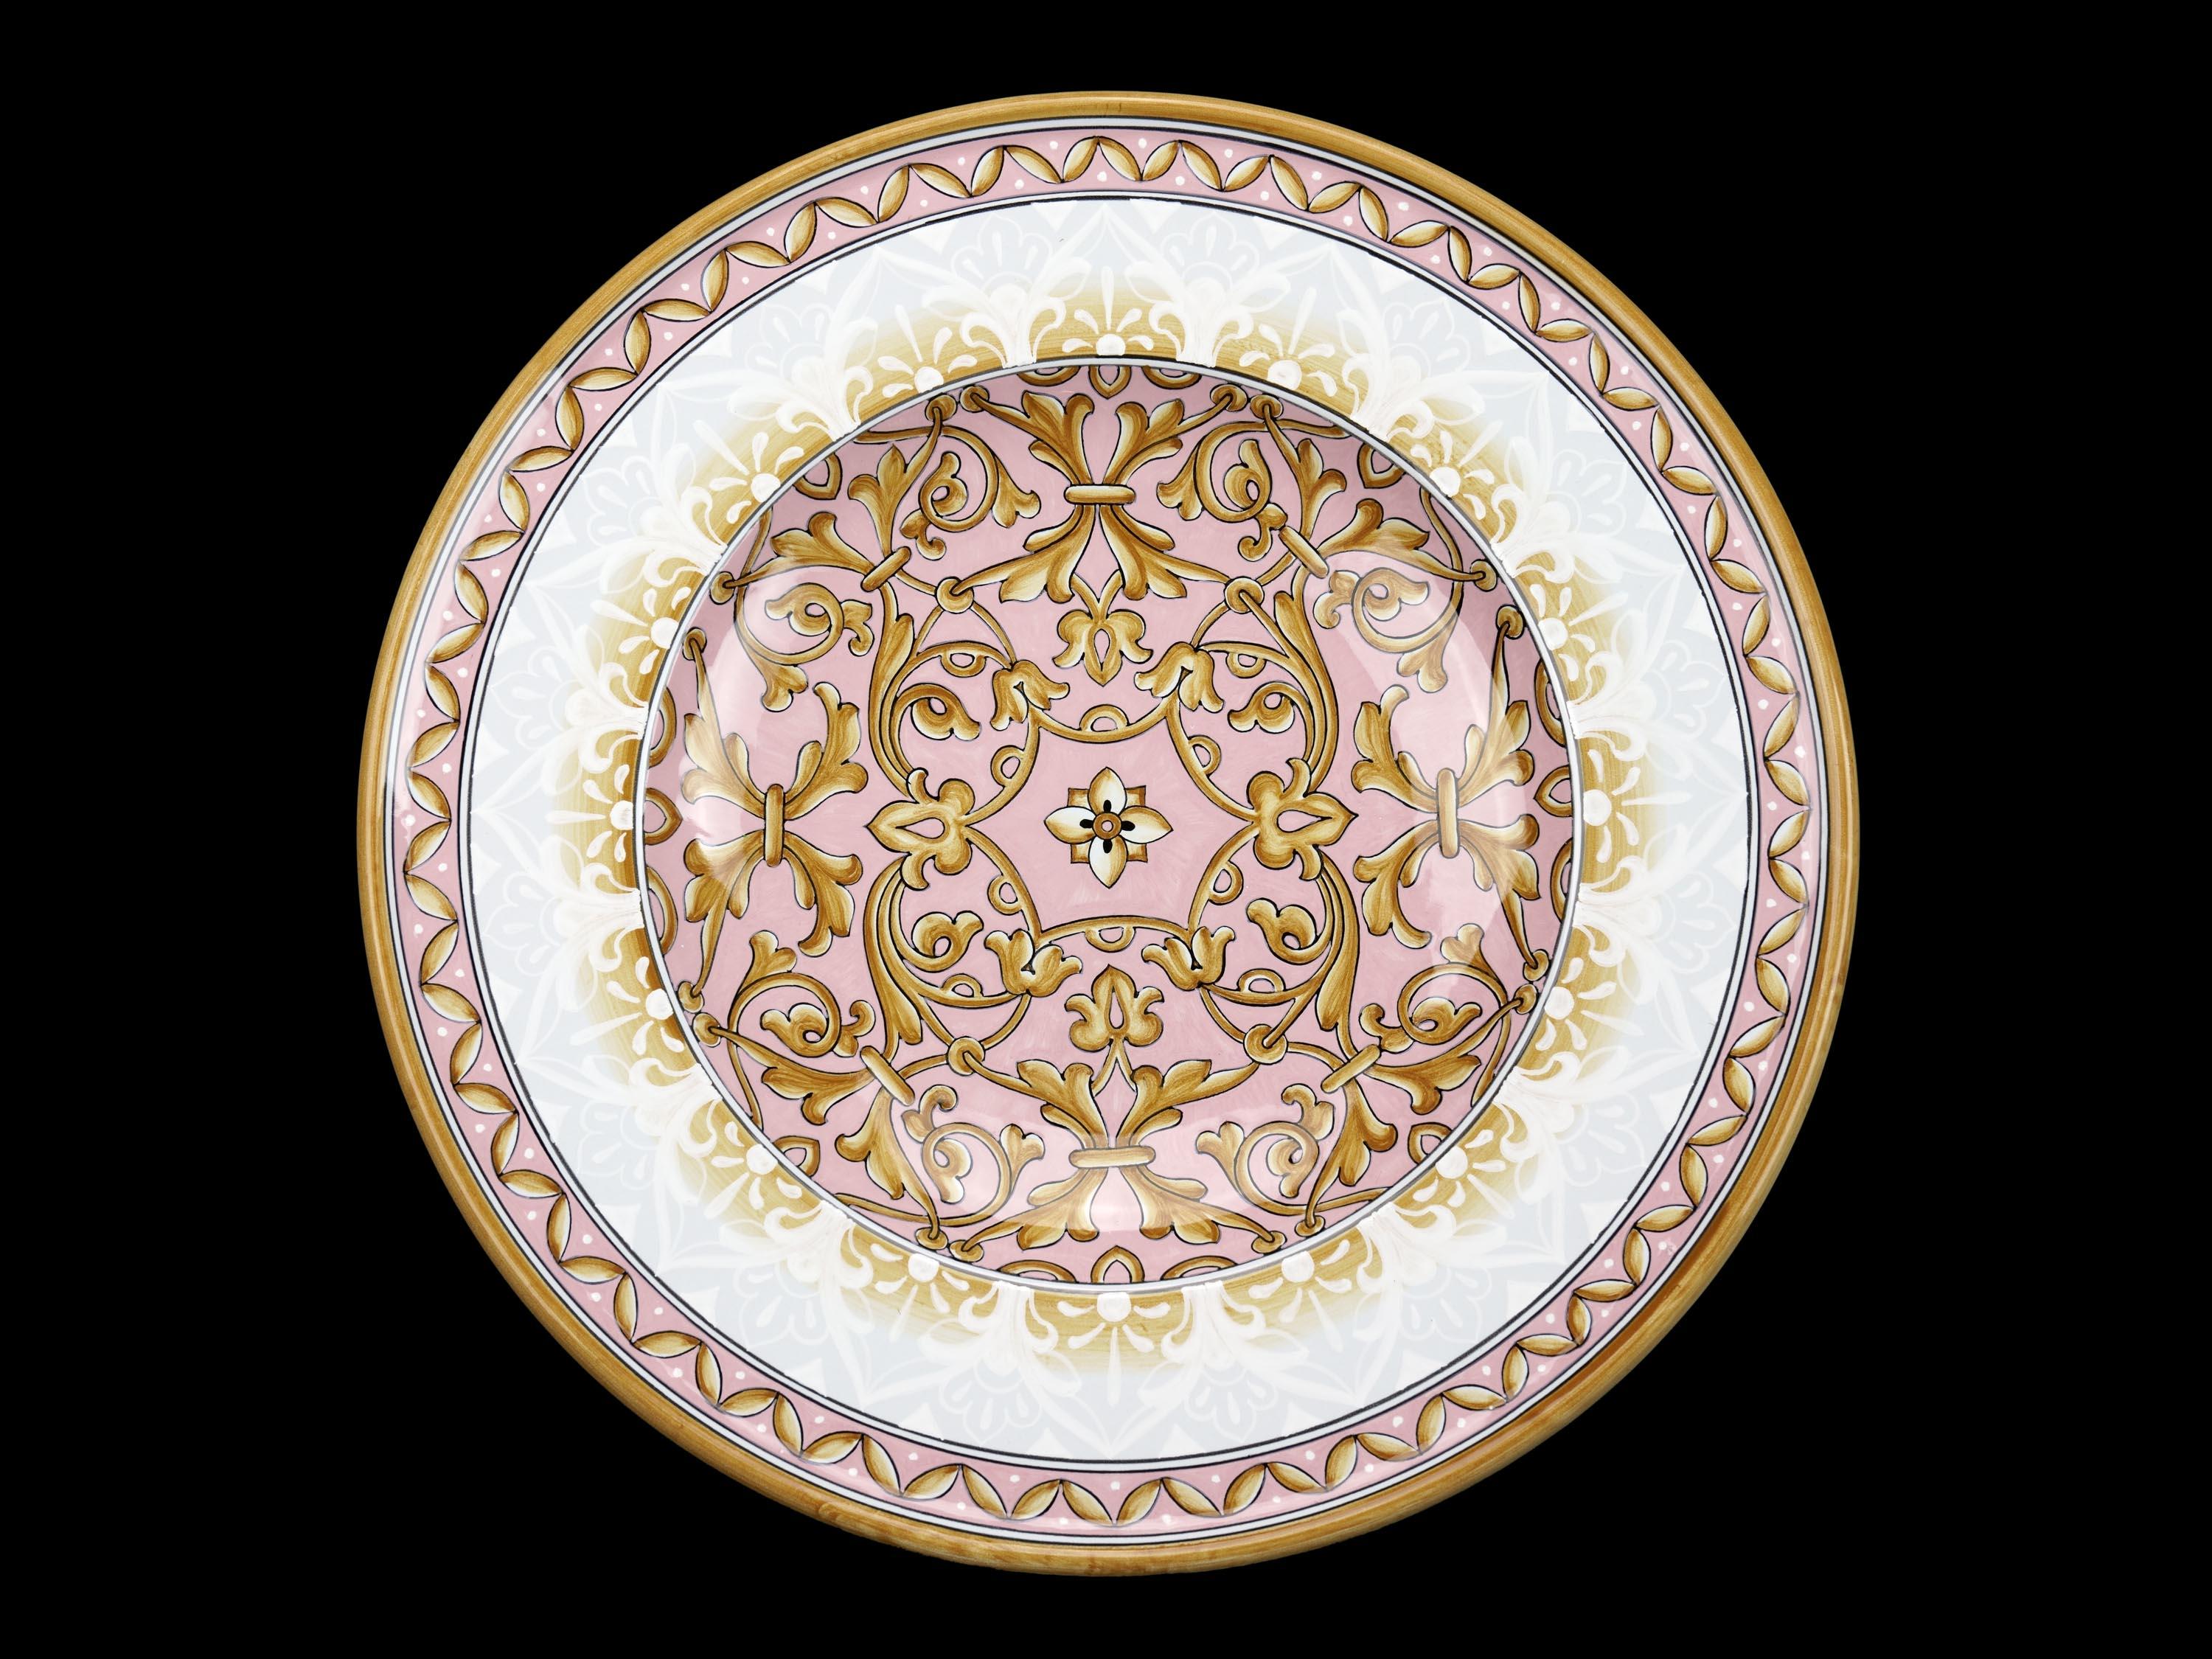 Grande assiette en céramique rose peinte à la main, fabriquée en édition limitée de 30 pièces. Cette assiette en majolique fabriquée en Italie peut être utilisée comme centre de table, plateau, coupe à fruits, comme plat mural décoratif ou comme